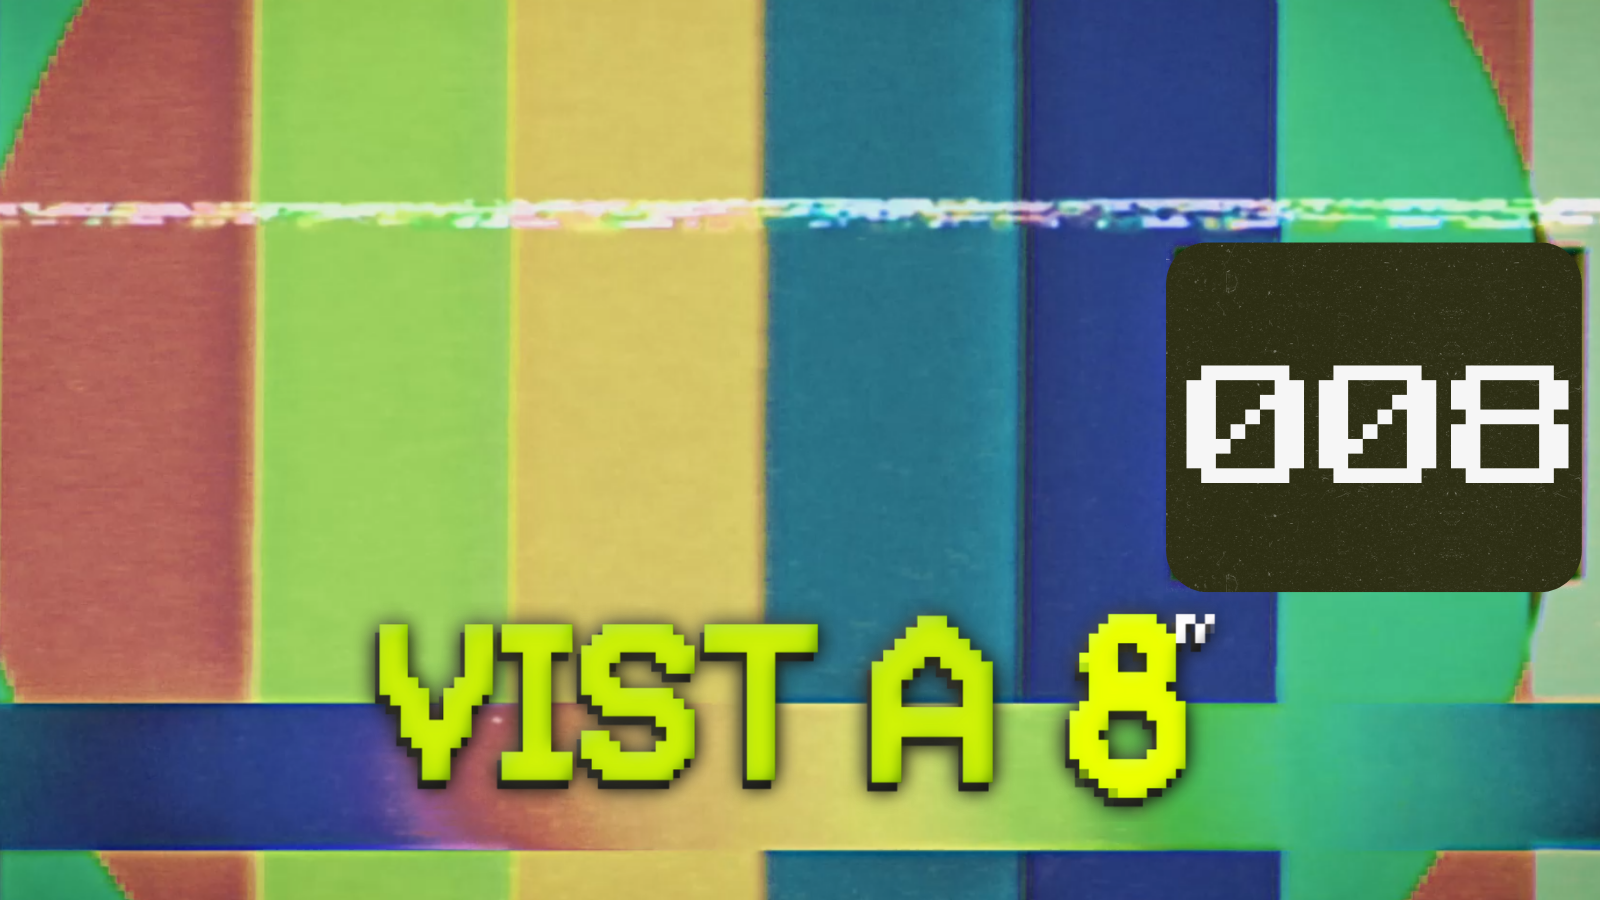 VIST A 8TV - EPISODI 8